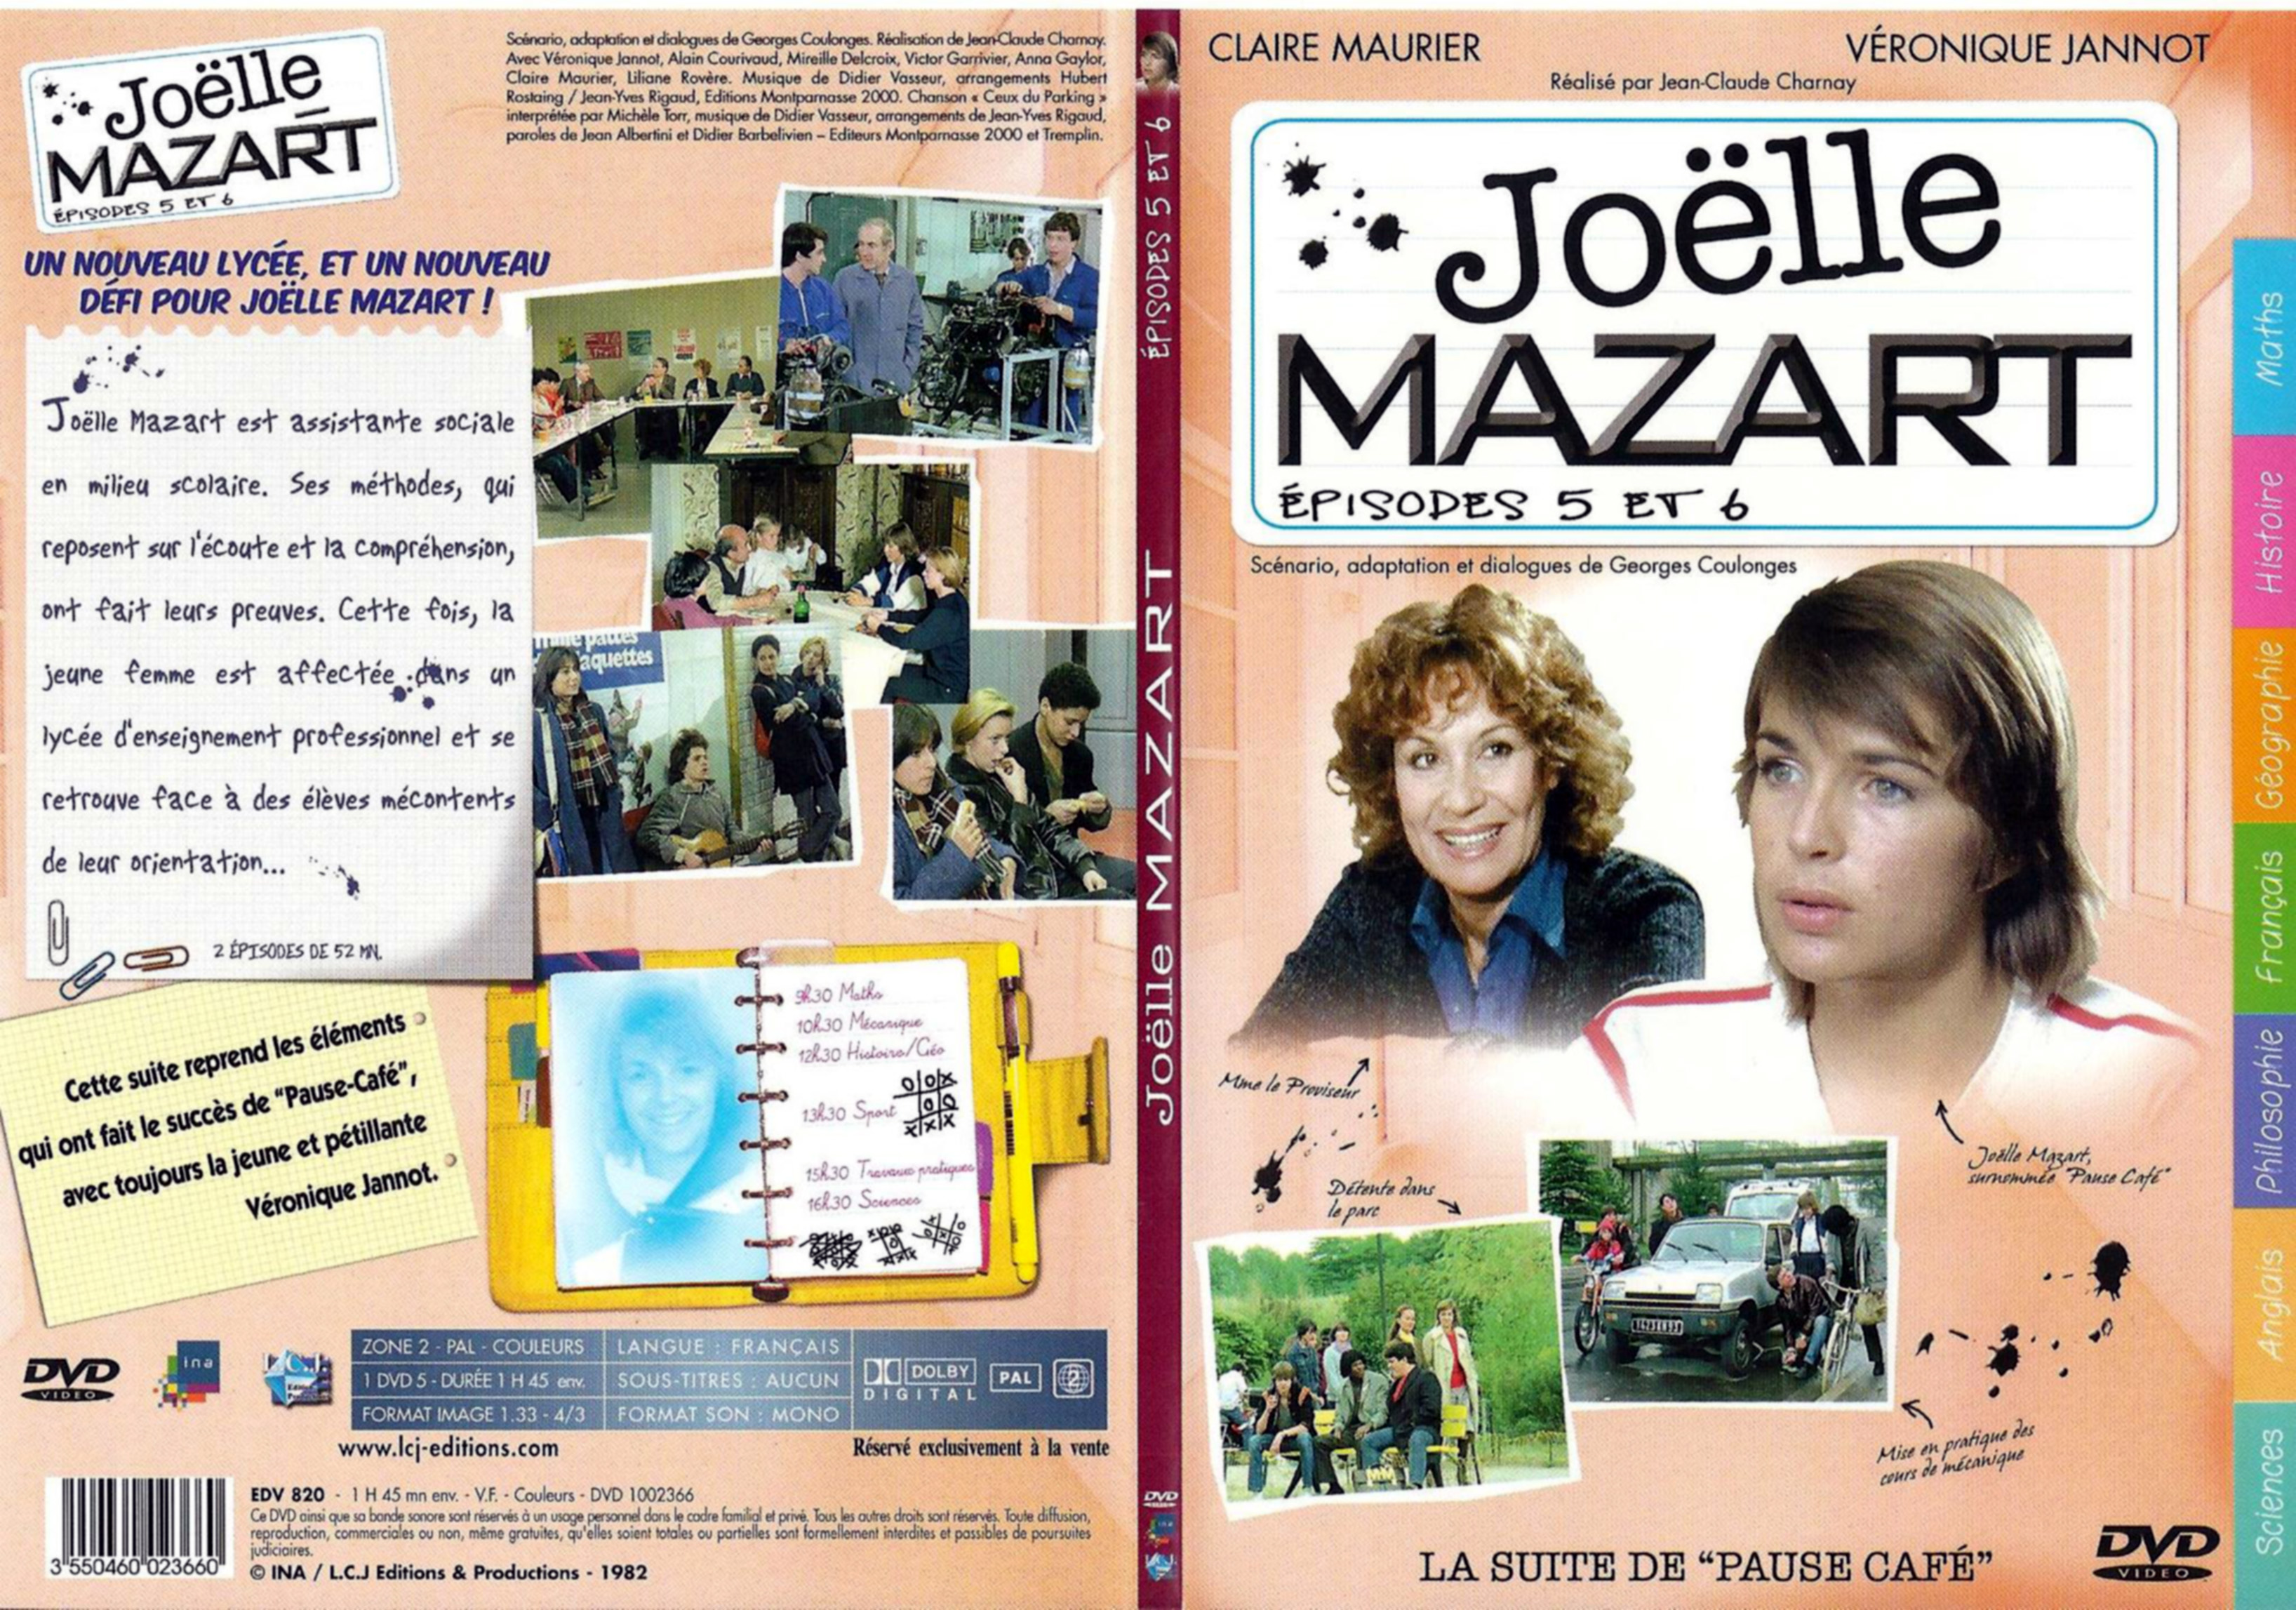 Jaquette DVD Joelle Mazart Episode 5 et 6